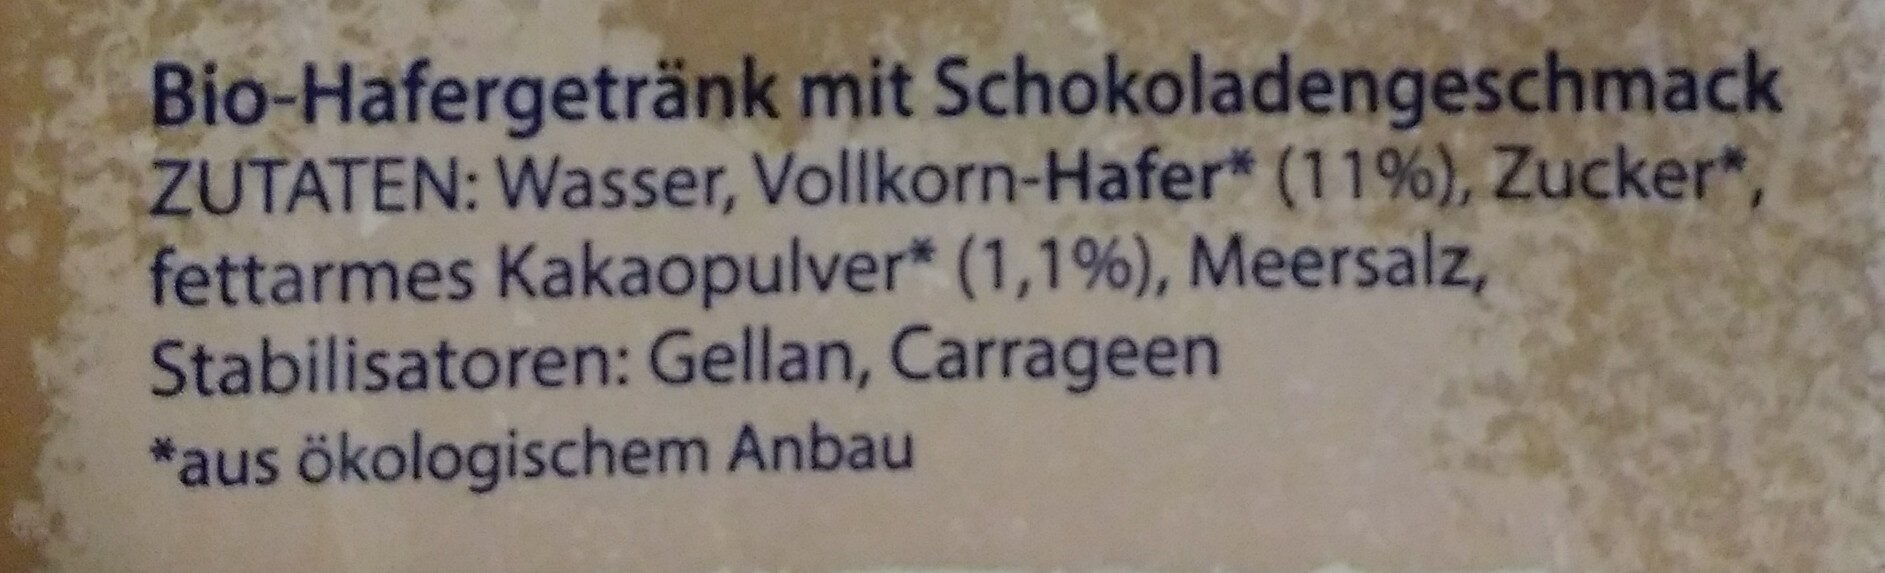 HaferLiebe Schoko - Ingredientes - de